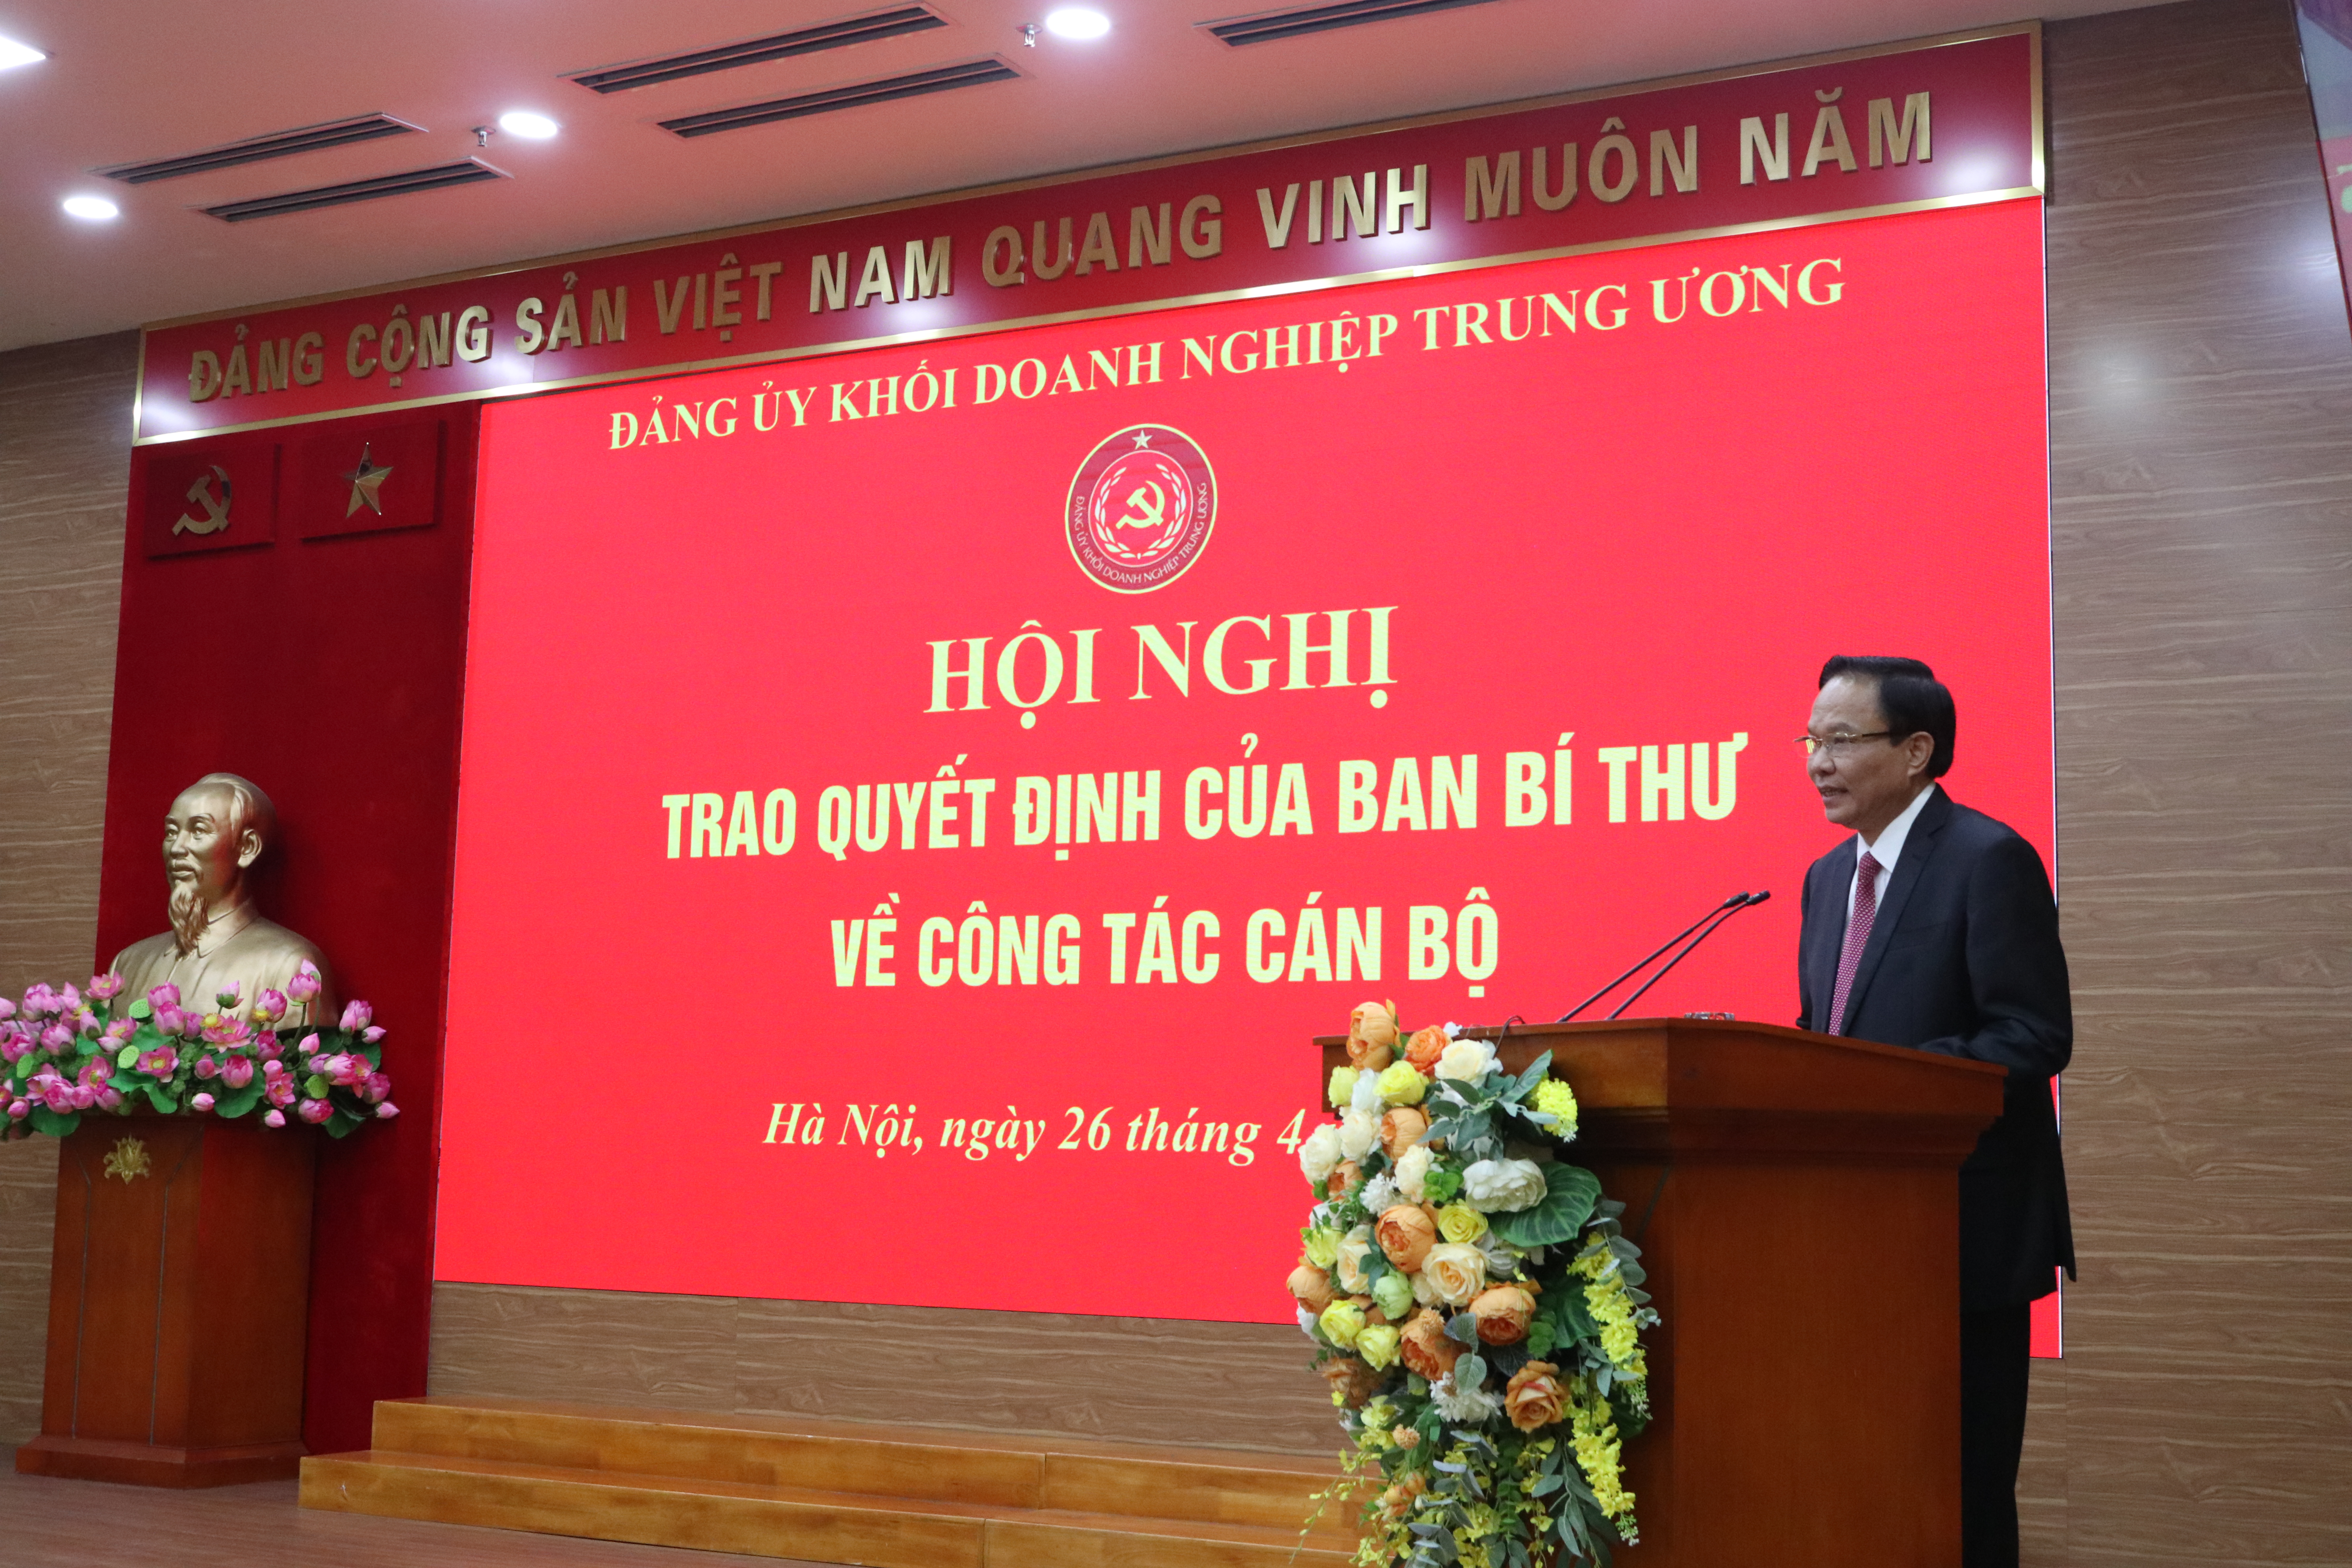 Đồng chí Lê Văn Châu, Phó Bí thư Đảng uỷ Khối phát biểu tại Hội nghị